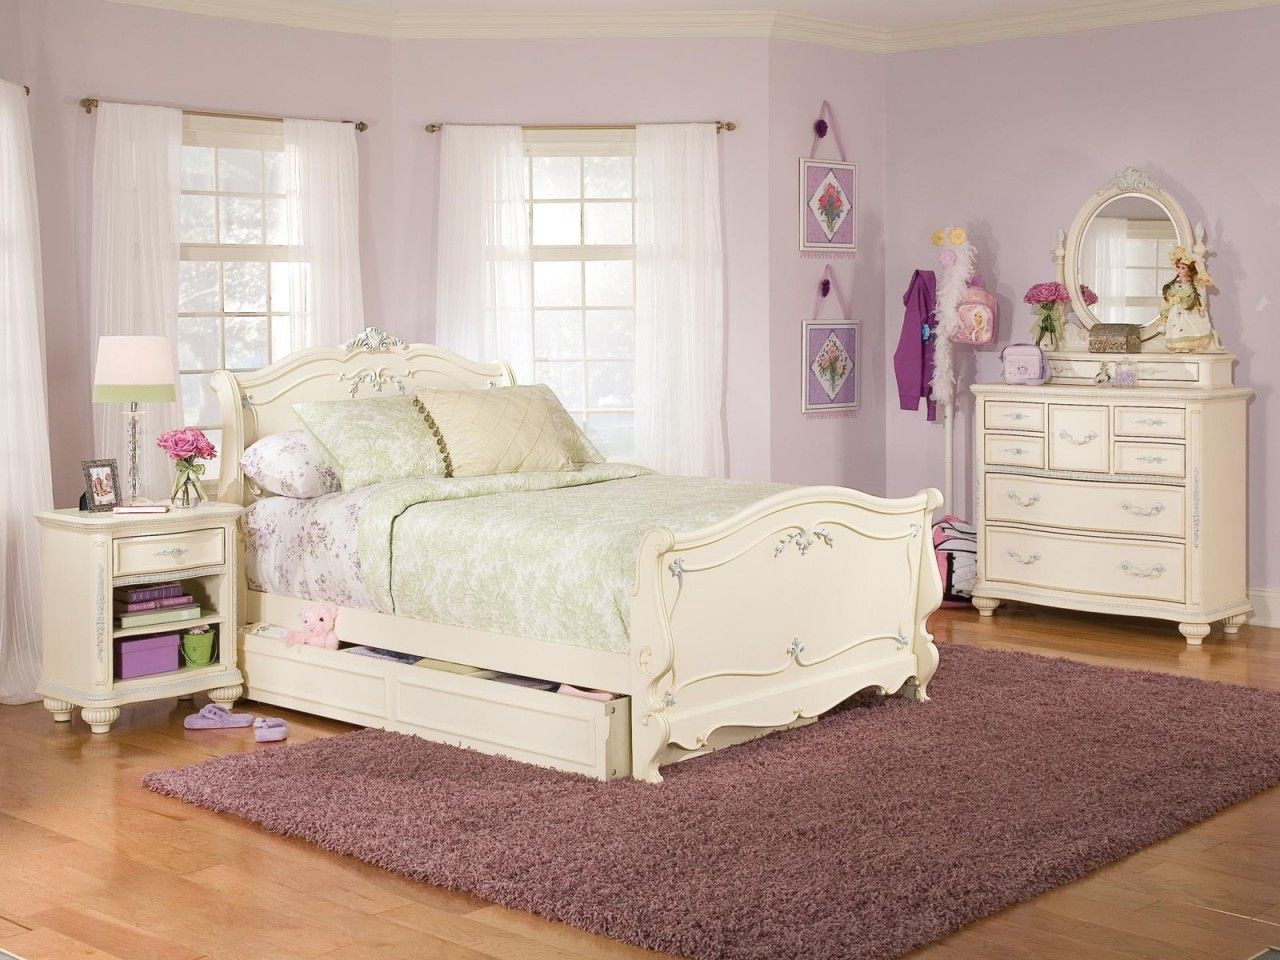 Girls Bedroom Furniture Sets Girls Black Bedroom Set Kids Twin Bed inside sizing 1280 X 960